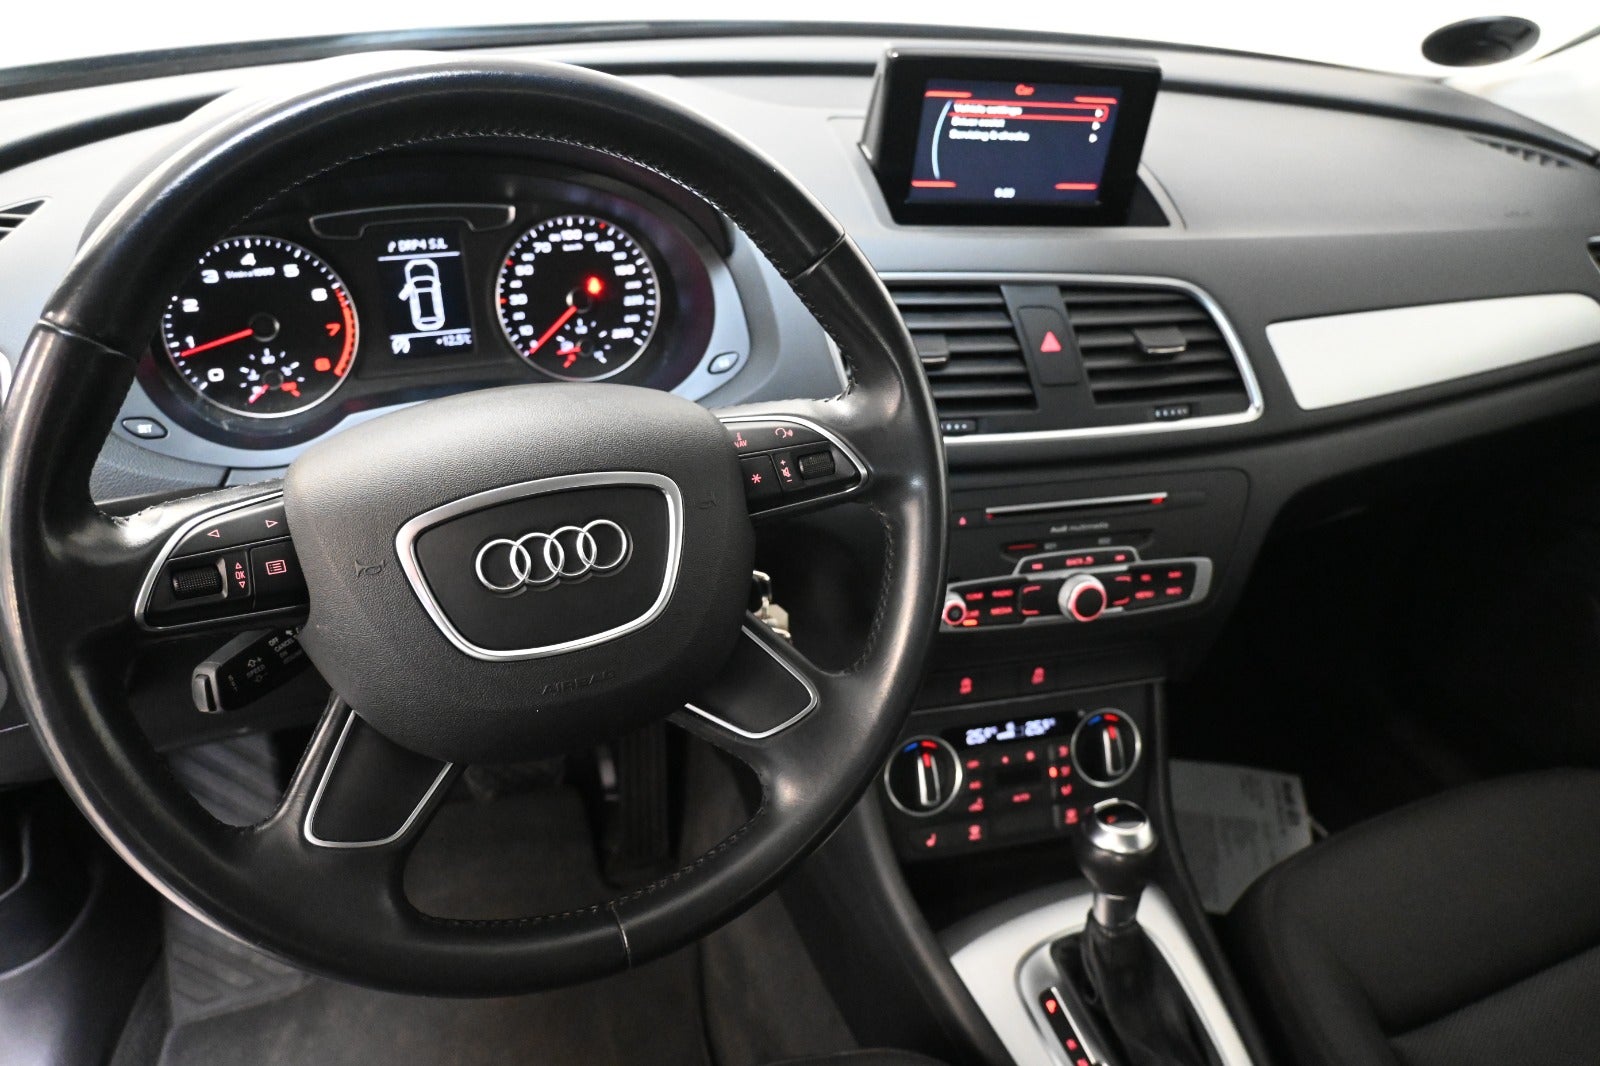 Audi Q3 2016